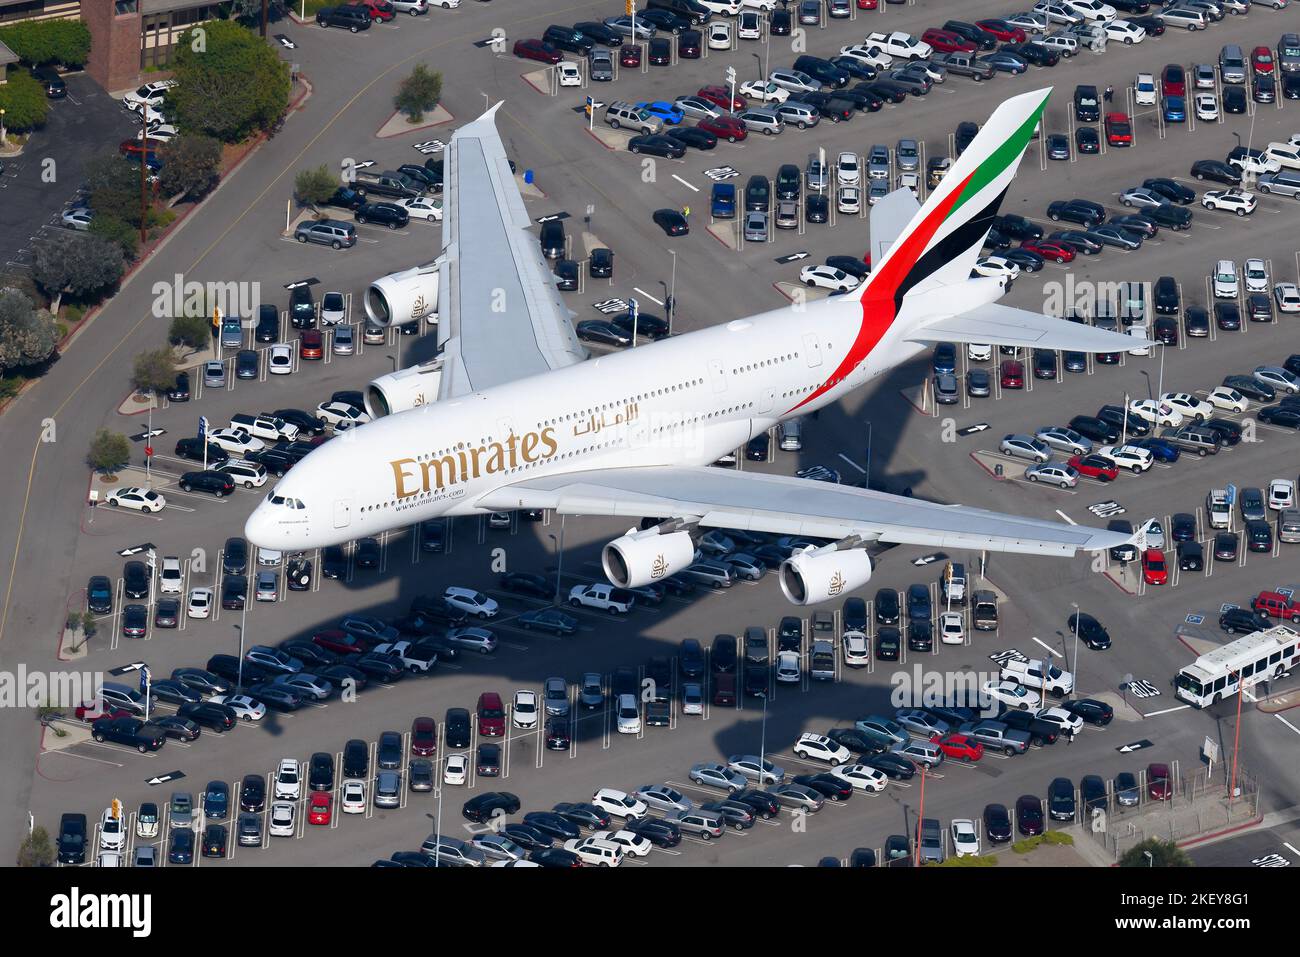 Emirates Airline Airbus A380 atterrissage. Vue aérienne de l'avion Emirates Airlines A380-800. Banque D'Images